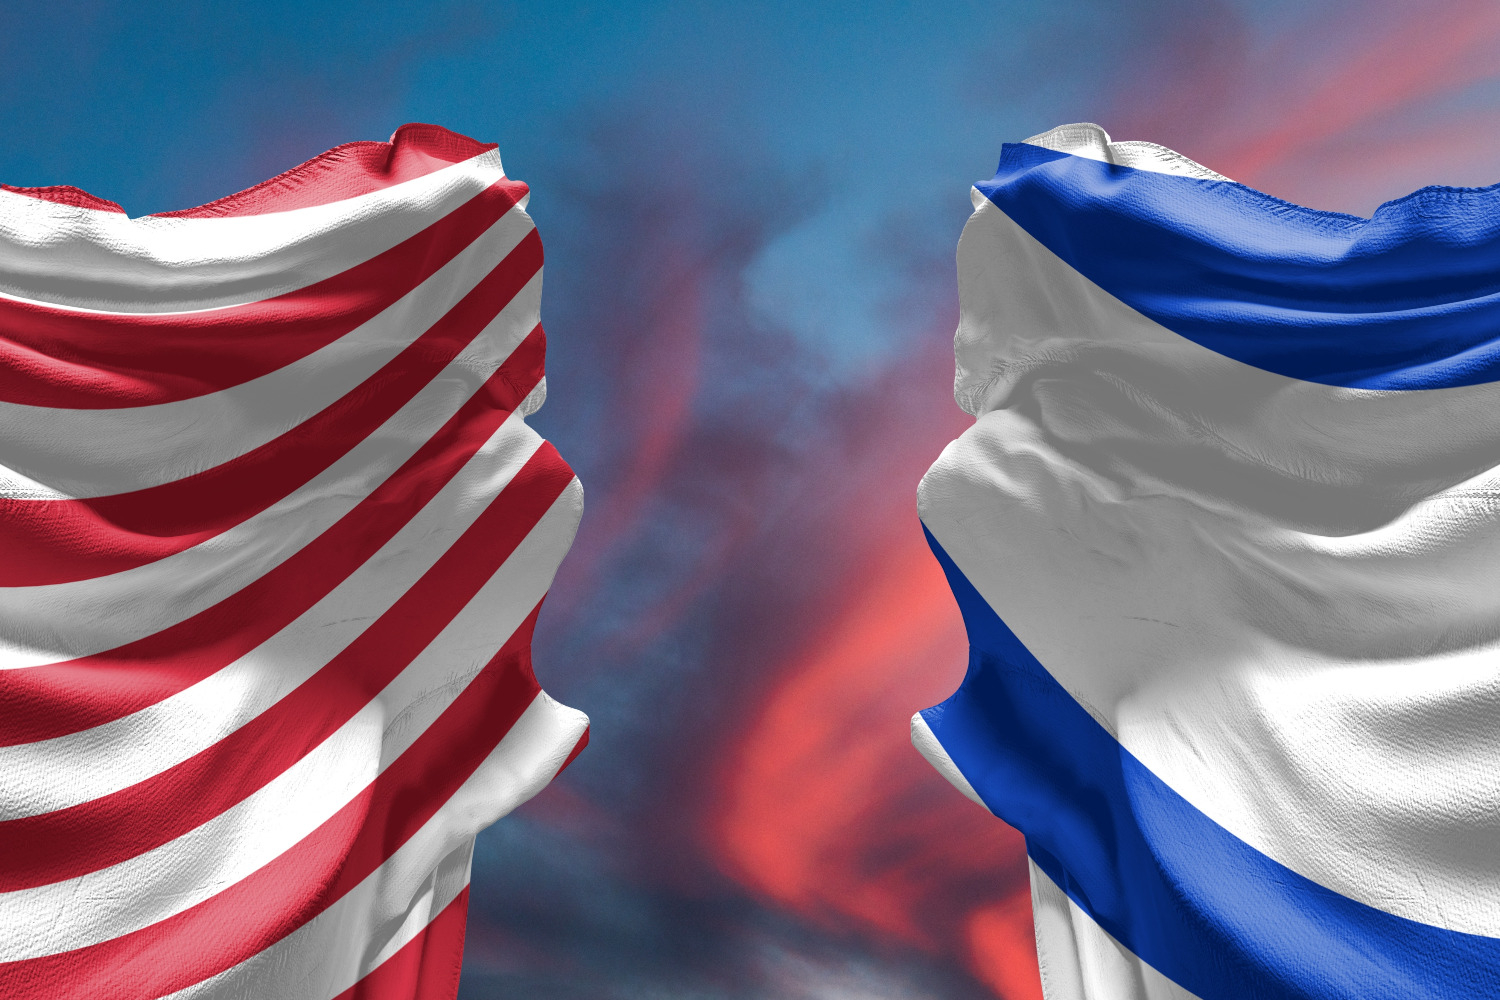 «Хадашот 12»: США спасли Израиль от катастрофического сценария войны